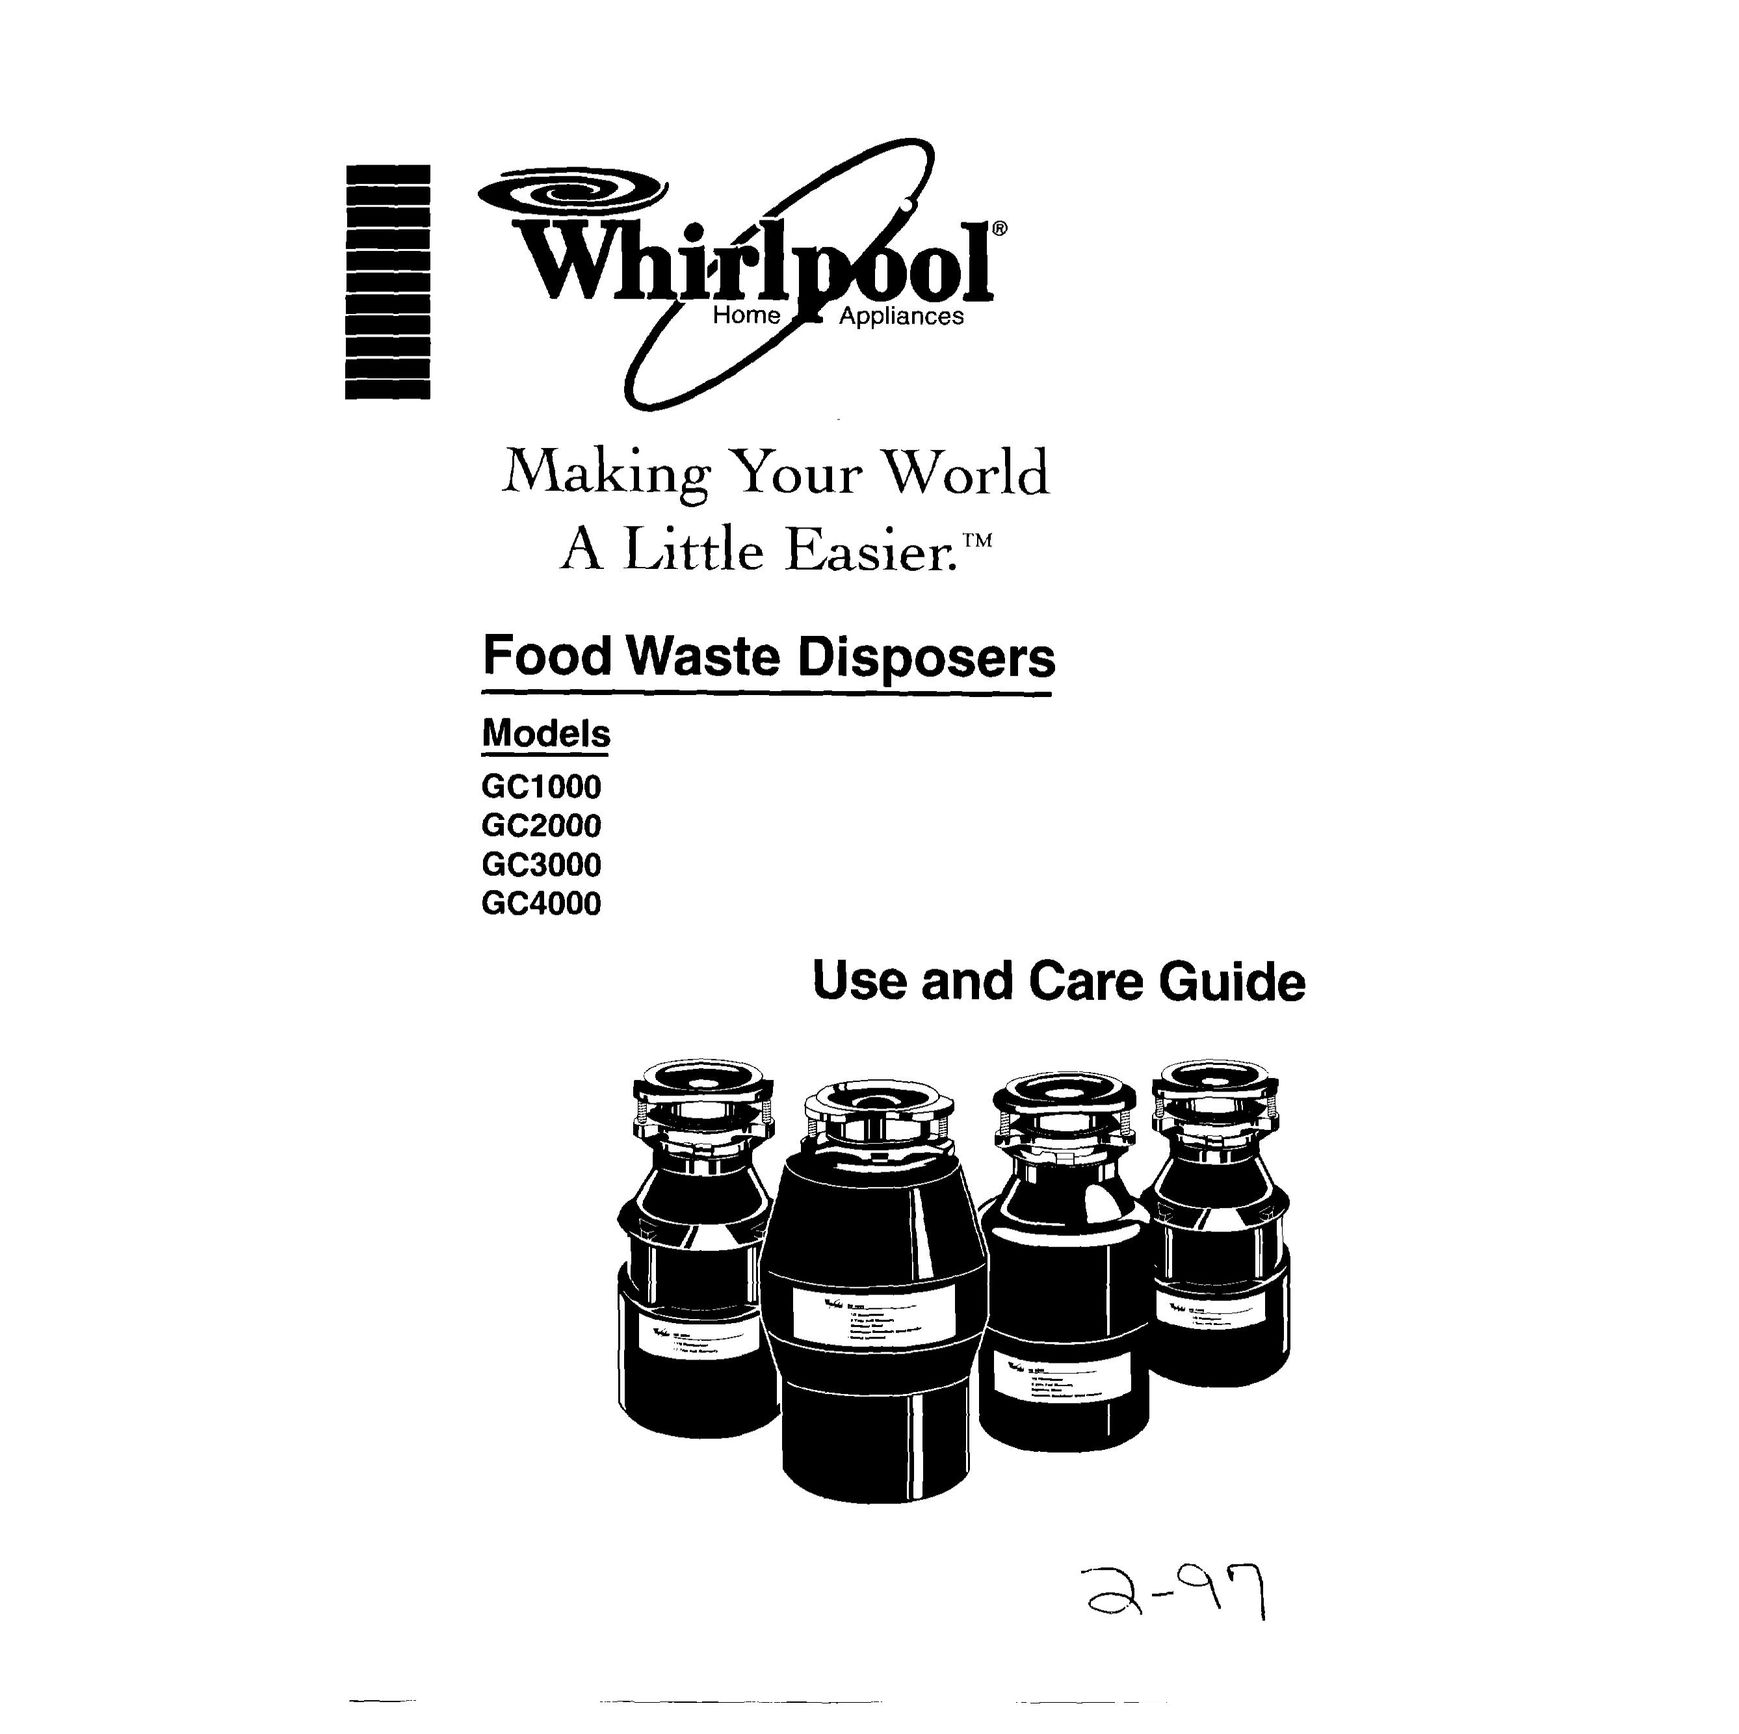 Whirlpool GC4000 Garbage Disposal User Manual